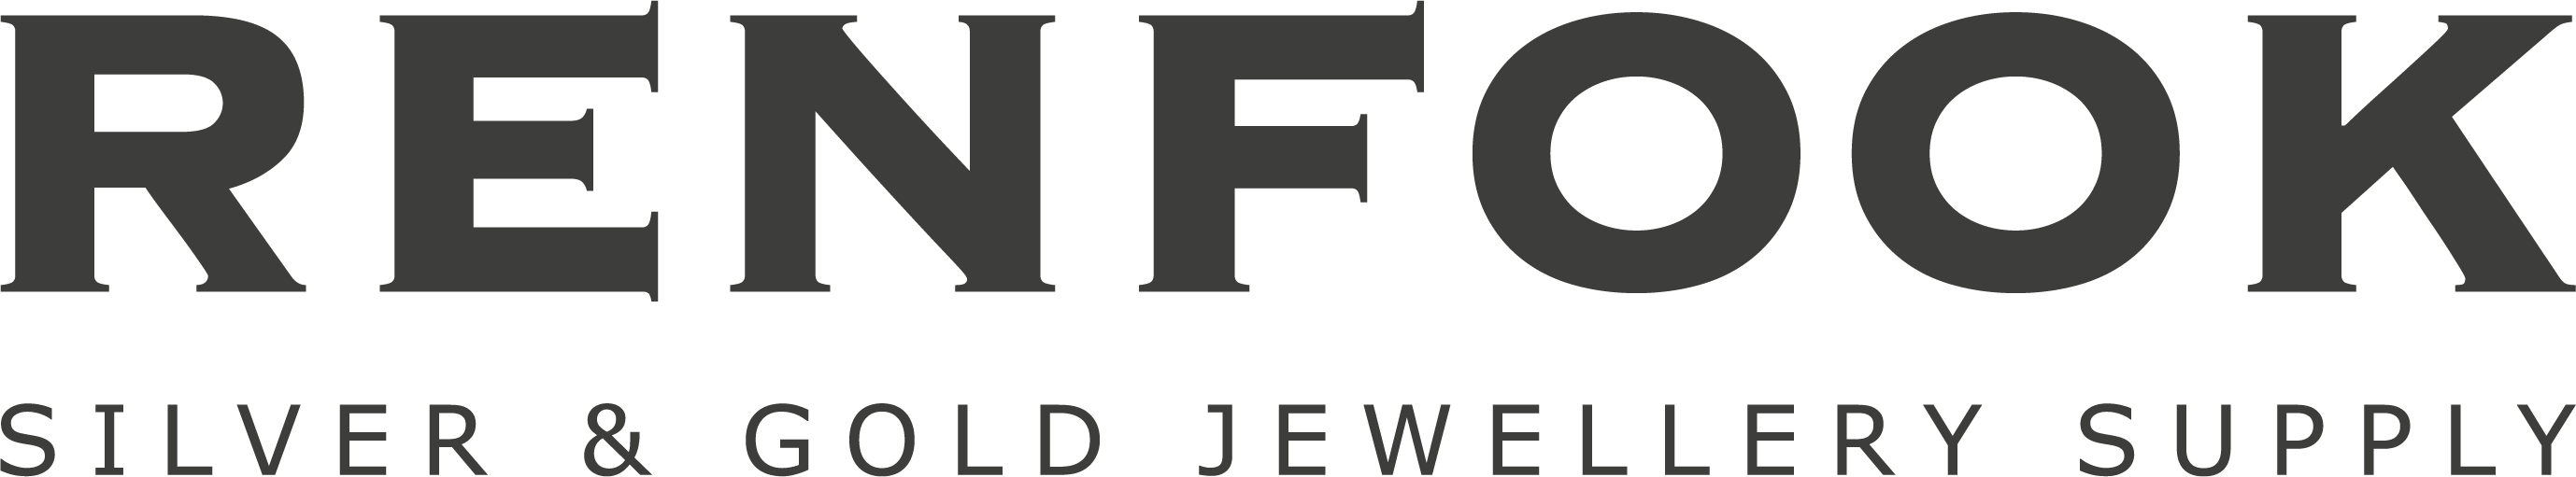 Jewelry Supplier Renfook